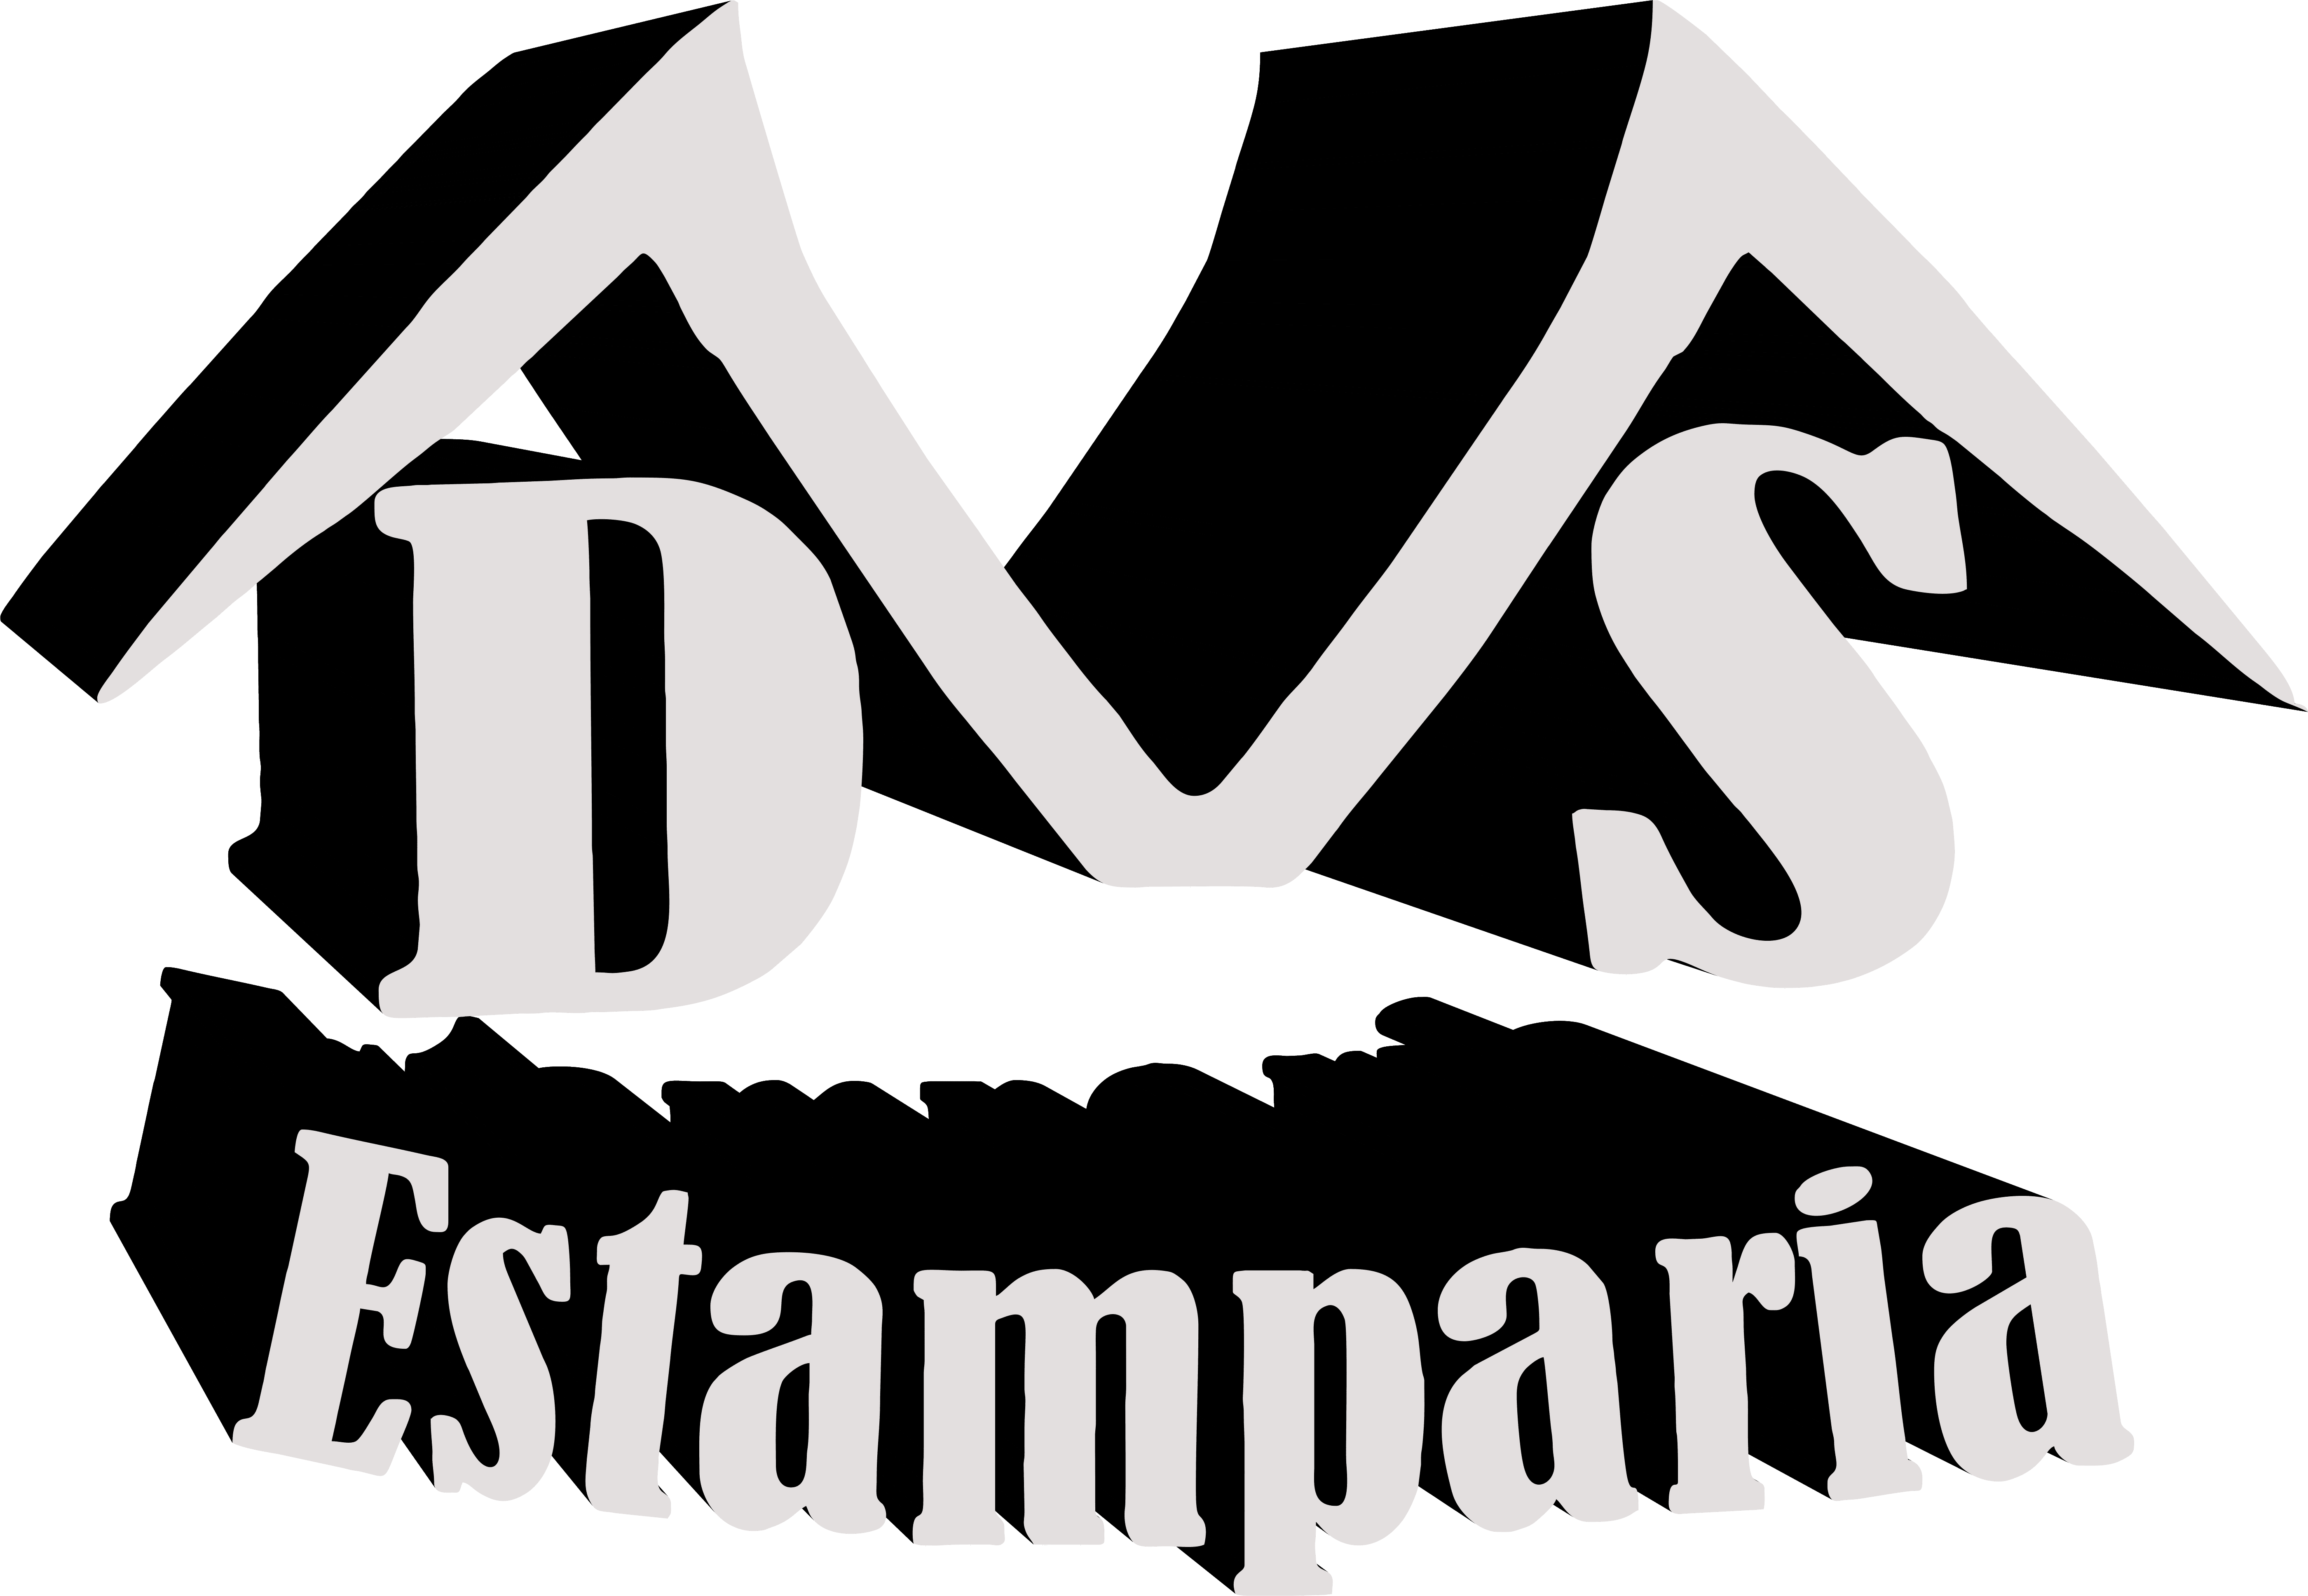 DVS Estamparia